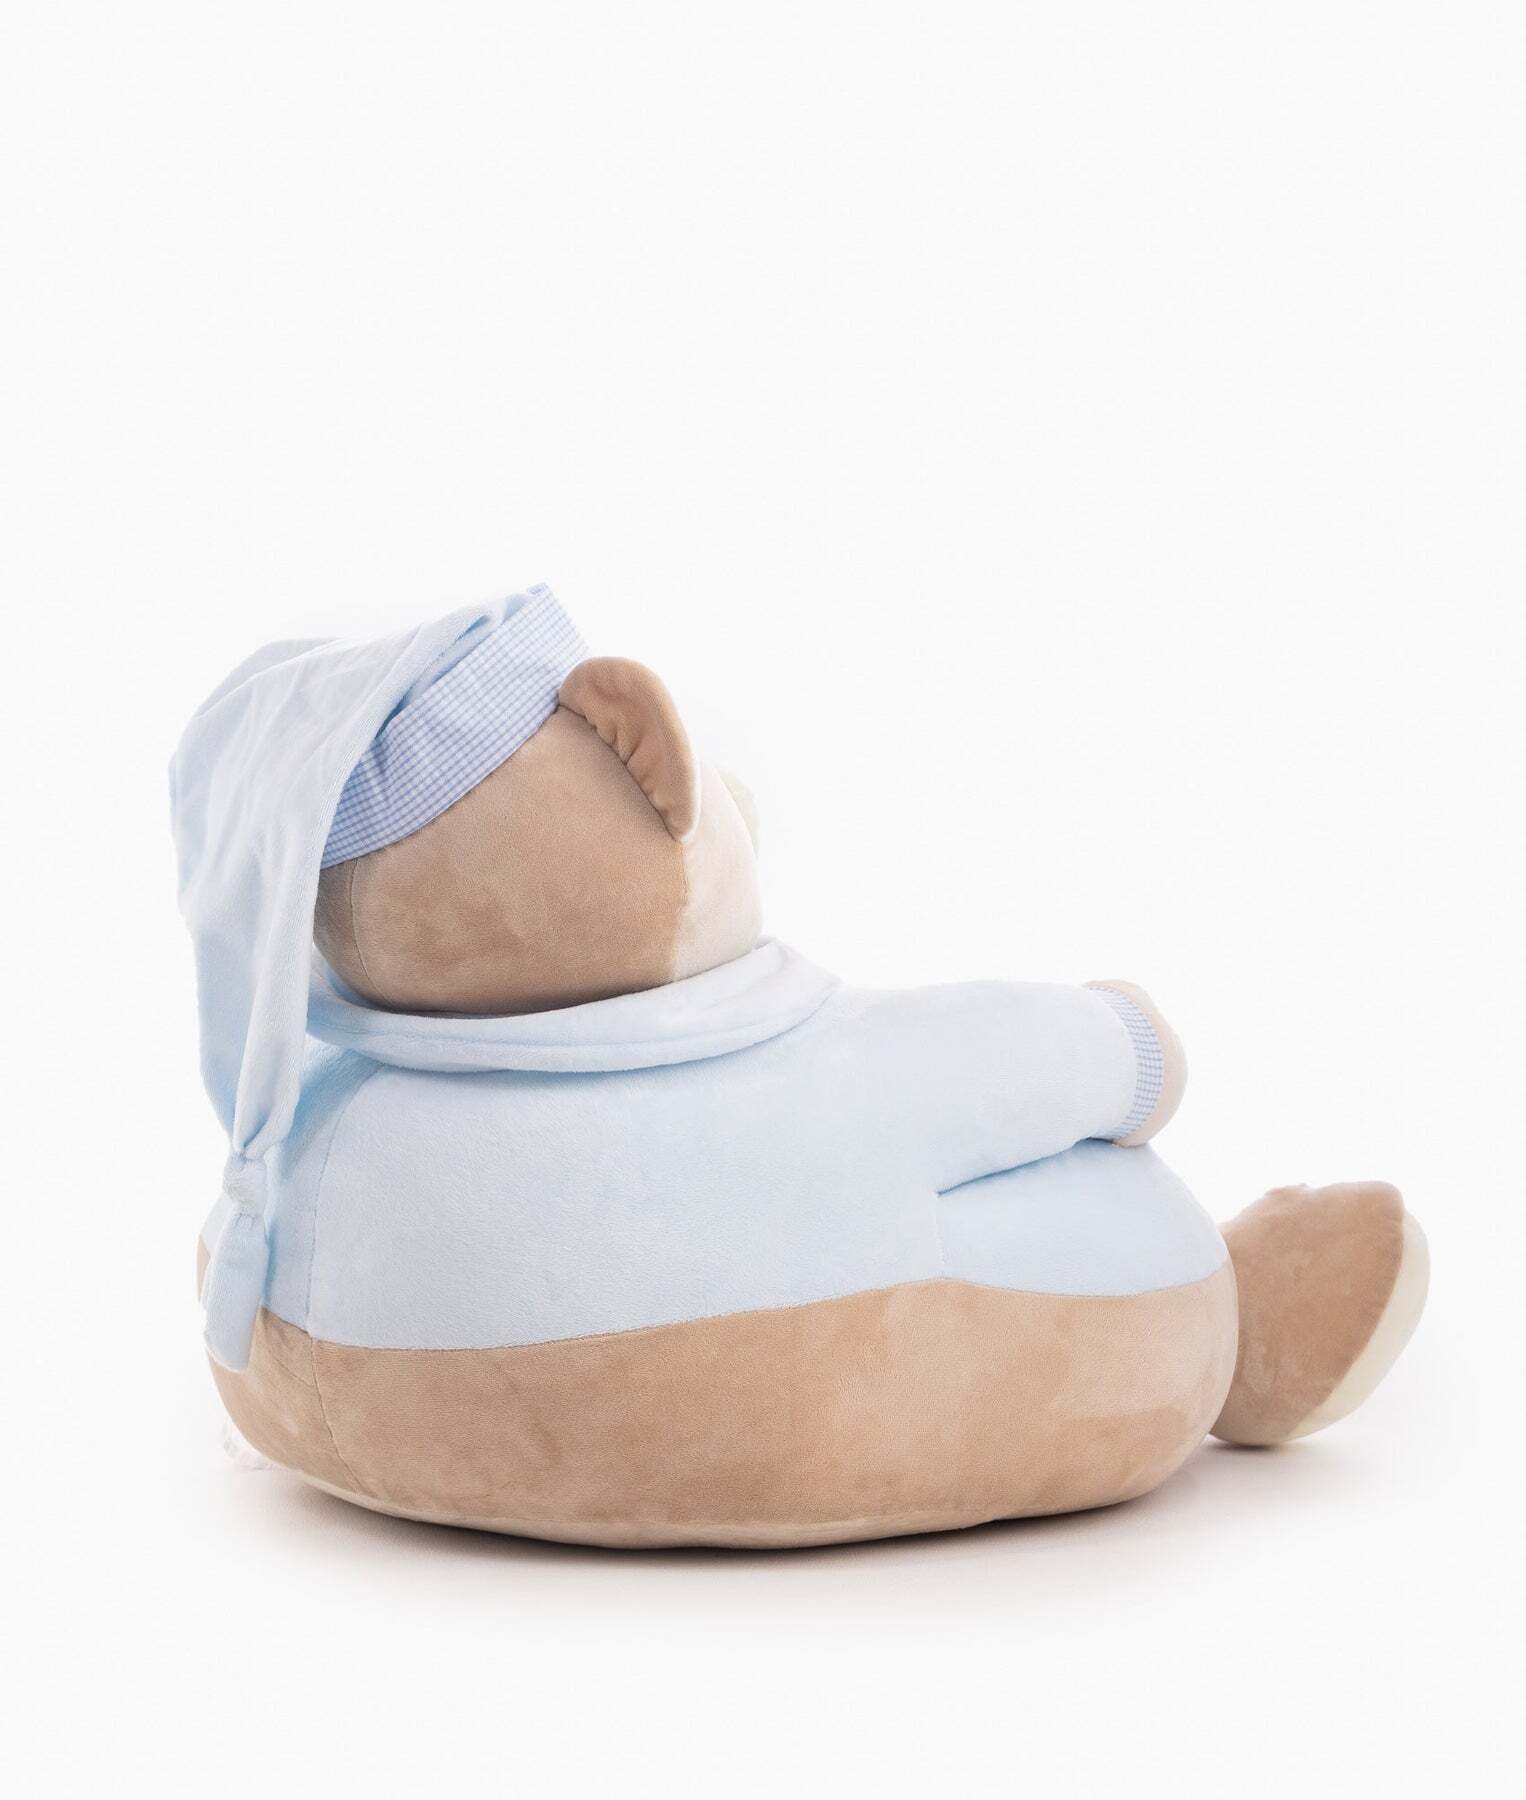 baby-bear-armchair-blue-633_1800x1800